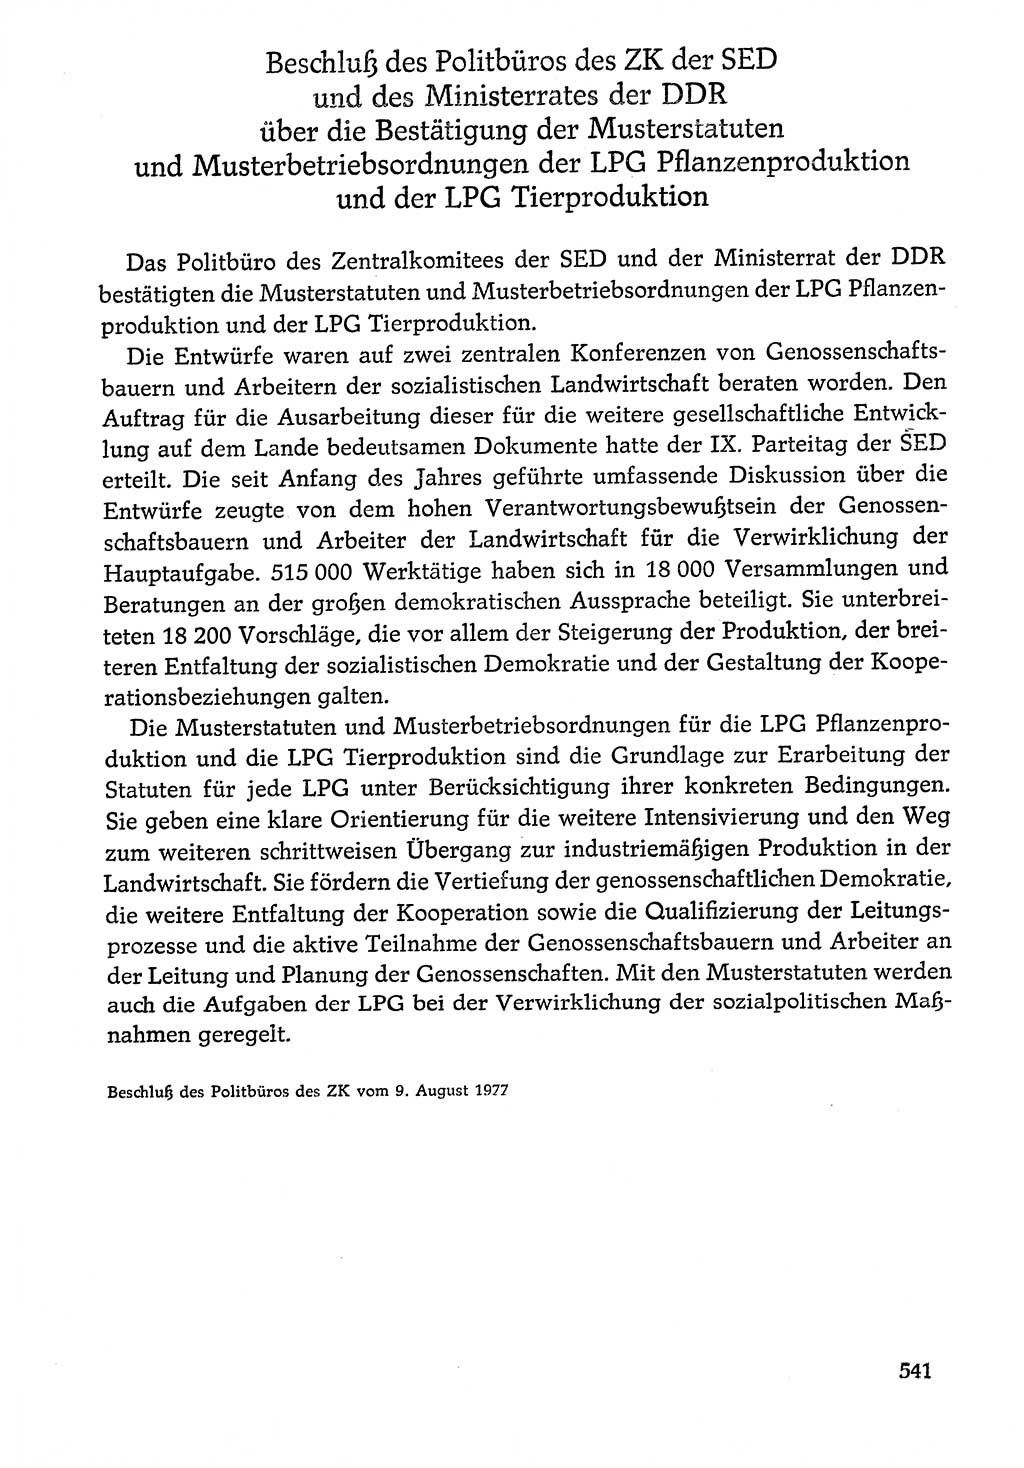 Dokumente der Sozialistischen Einheitspartei Deutschlands (SED) [Deutsche Demokratische Republik (DDR)] 1976-1977, Seite 541 (Dok. SED DDR 1976-1977, S. 541)